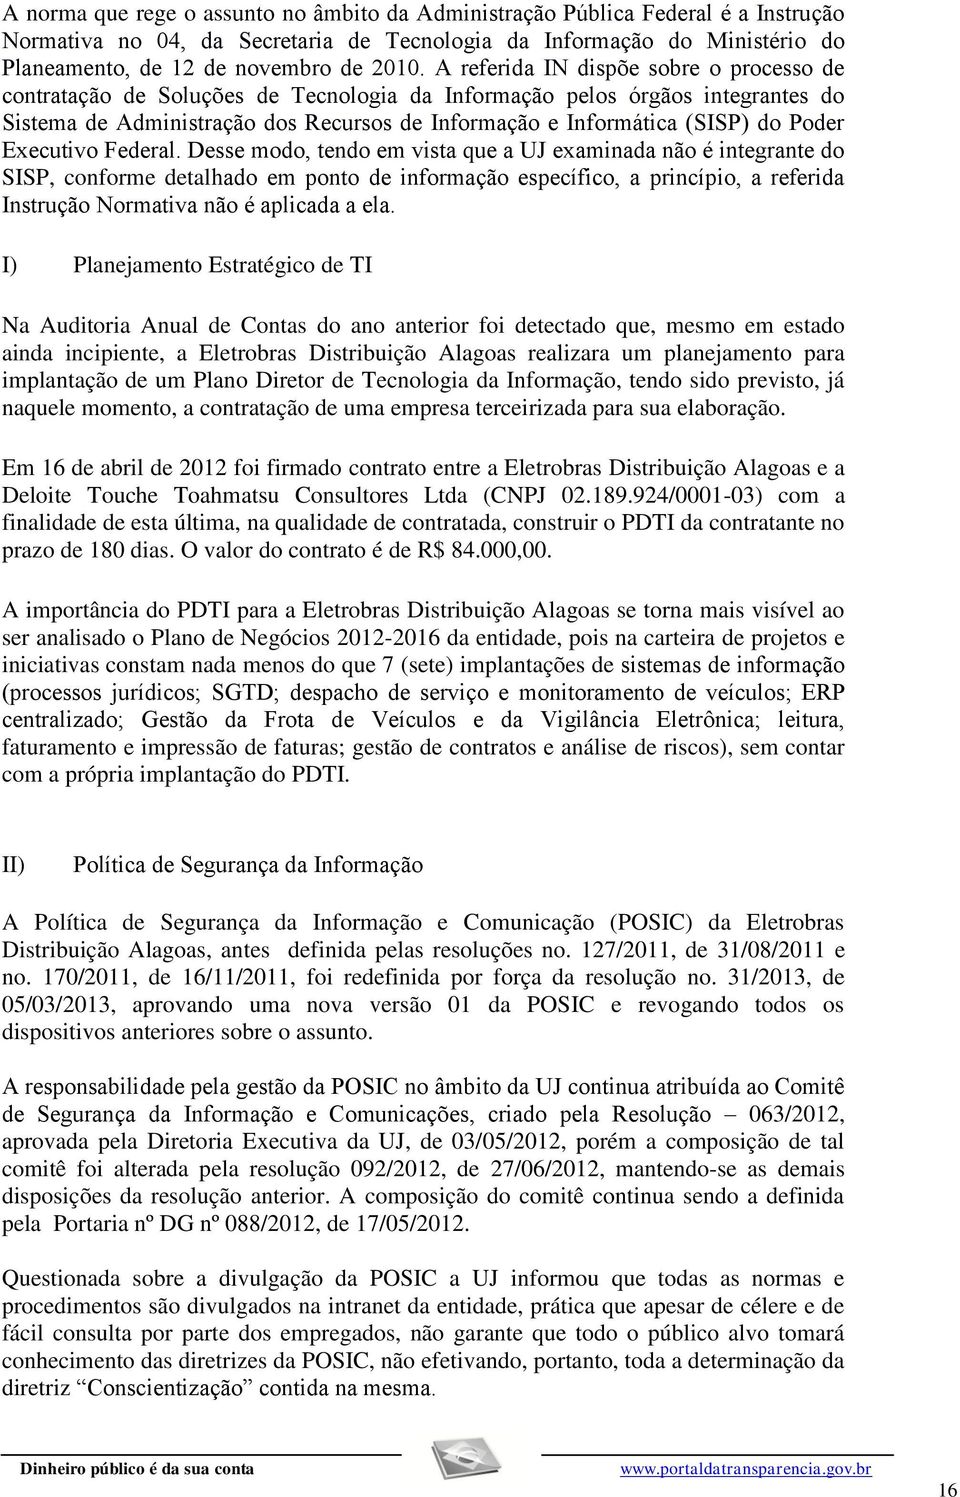 para sua elaboração. Em 16 de abril de 2012 foi firmado contrato entre a Eletrobras Distribuição Alagoas e a Deloite Touche Toahmatsu Consultores Ltda (CNPJ 02.189.